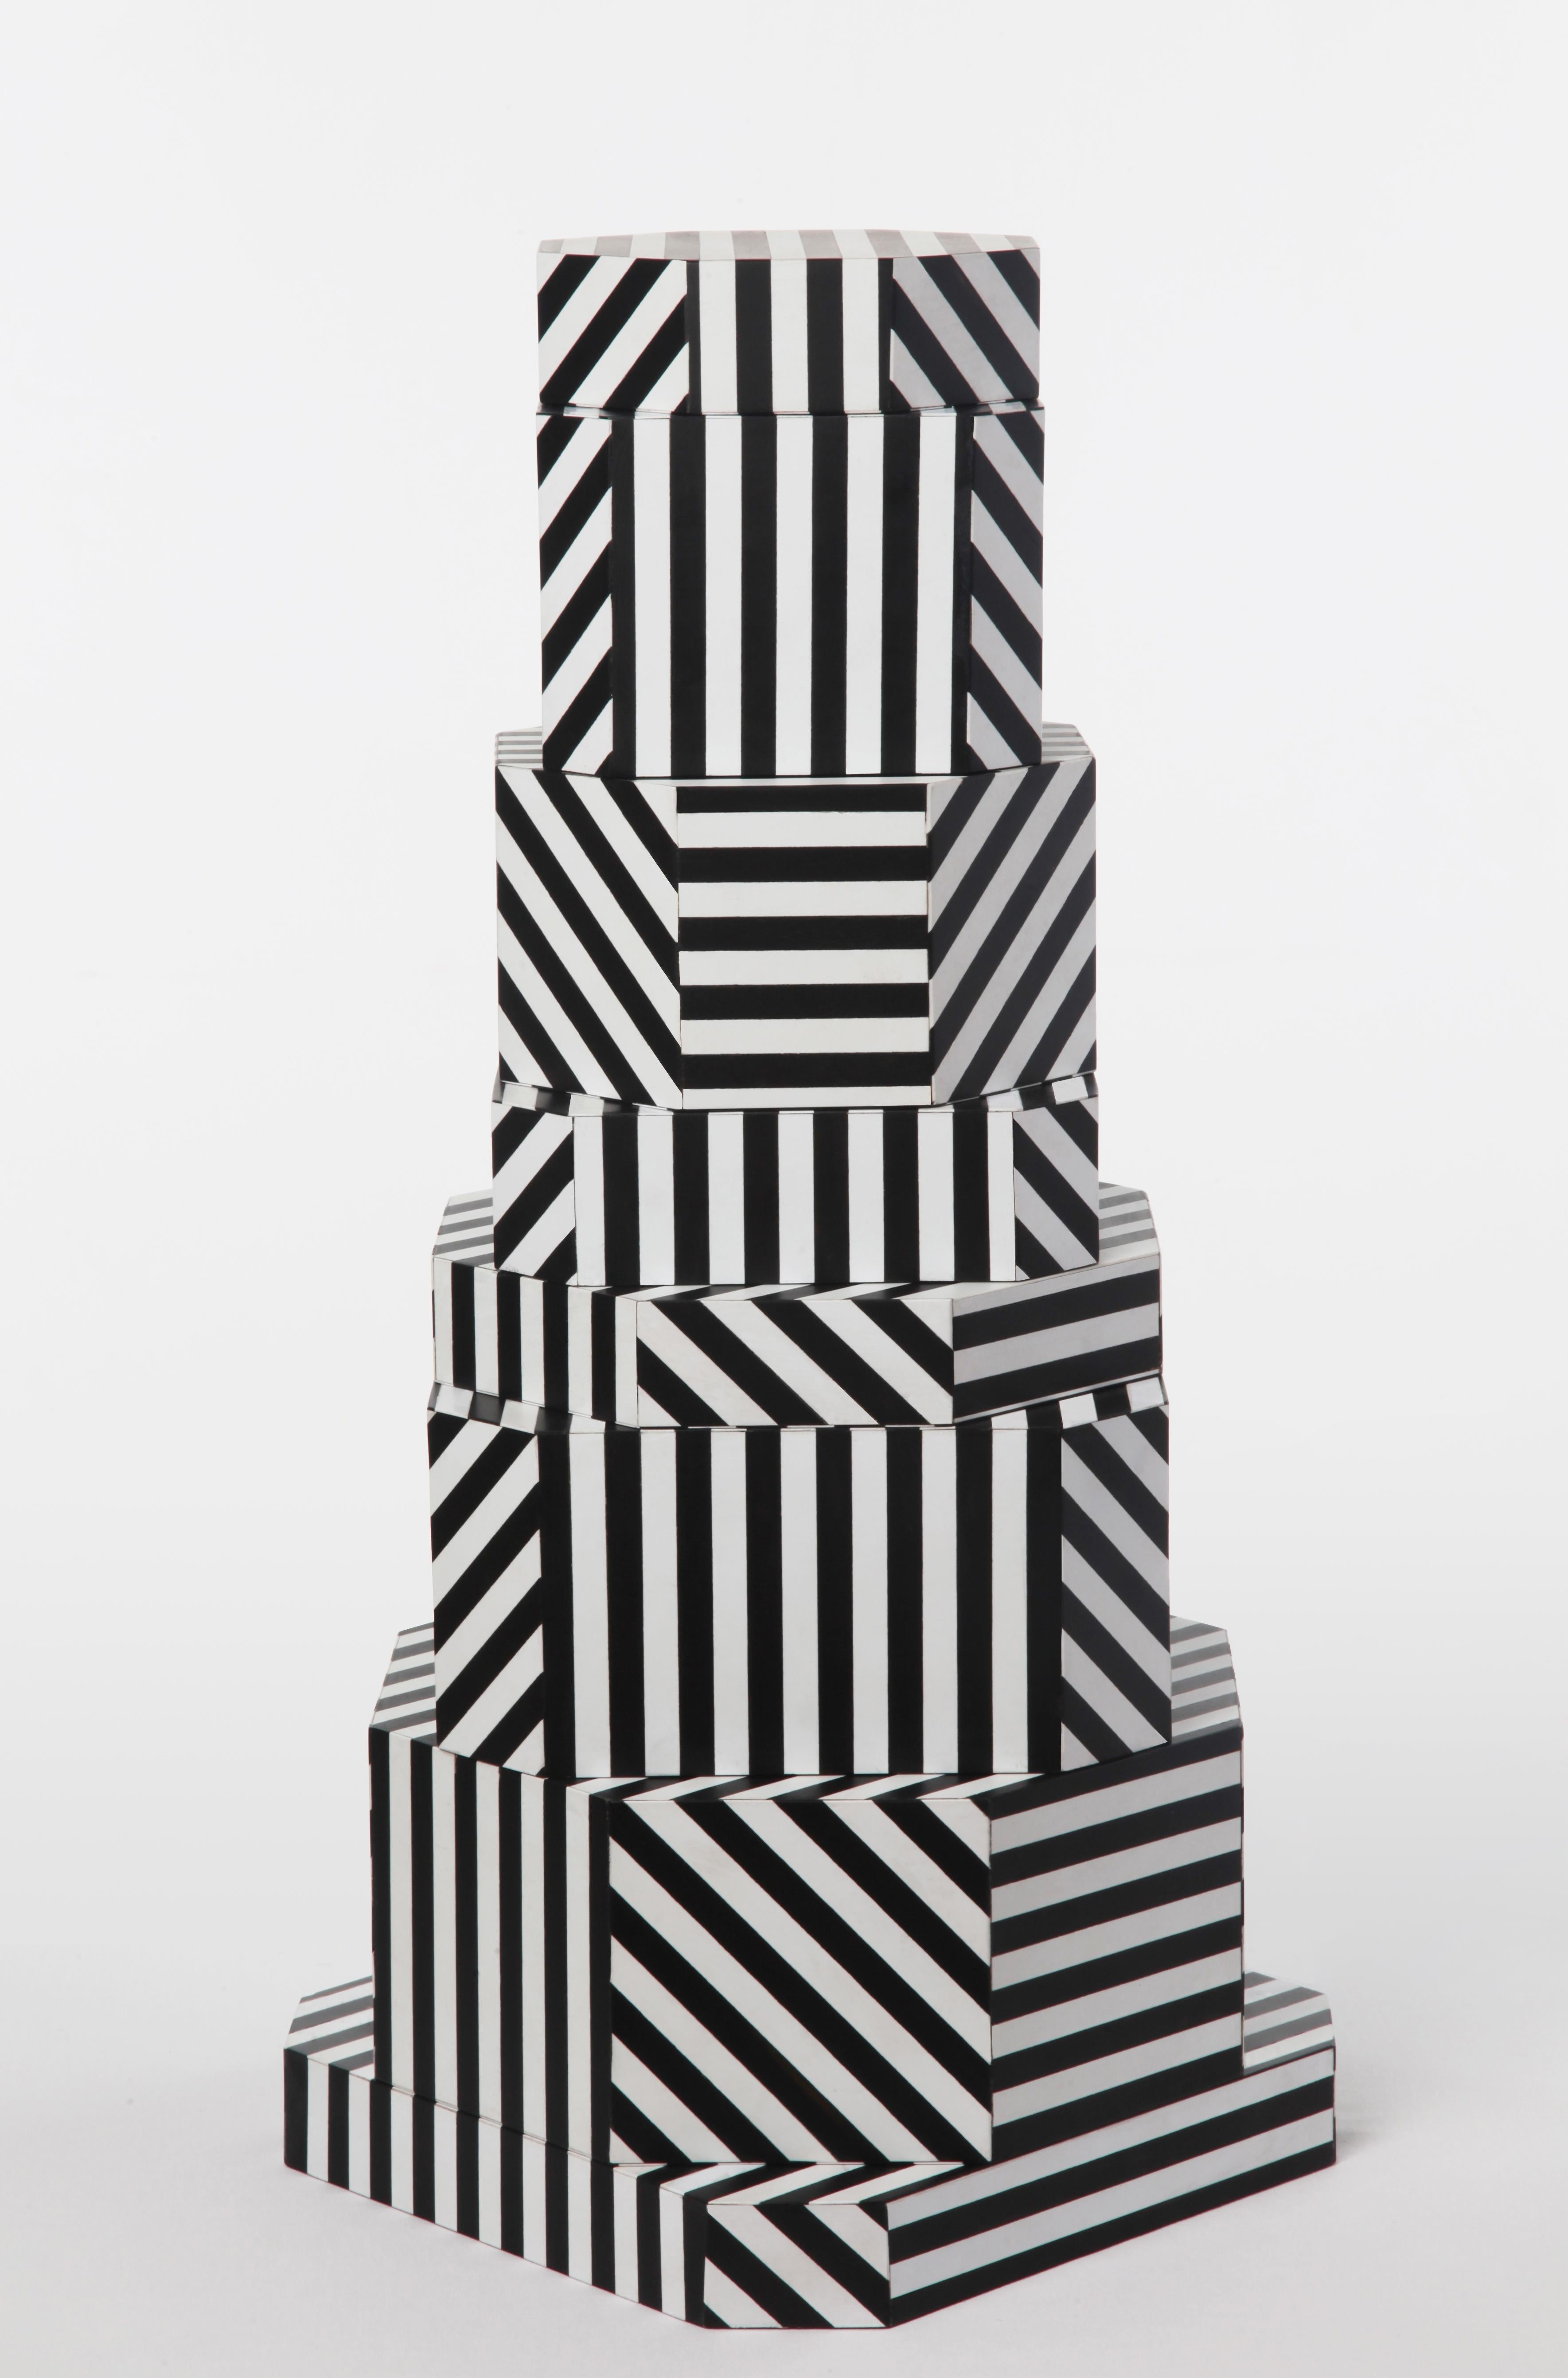 Boîtes Ziggurat à rayures noires par Oeuffice
Édition : 12 + 2AP
2012
Dimensions : 25 x 25 x 55 cm
MATERIAL : Boîte en bois, acrylique, bois massif teinté

L'édition noire Stripes évoque des détails audacieux et linéaires proches de l'optique.
Art.